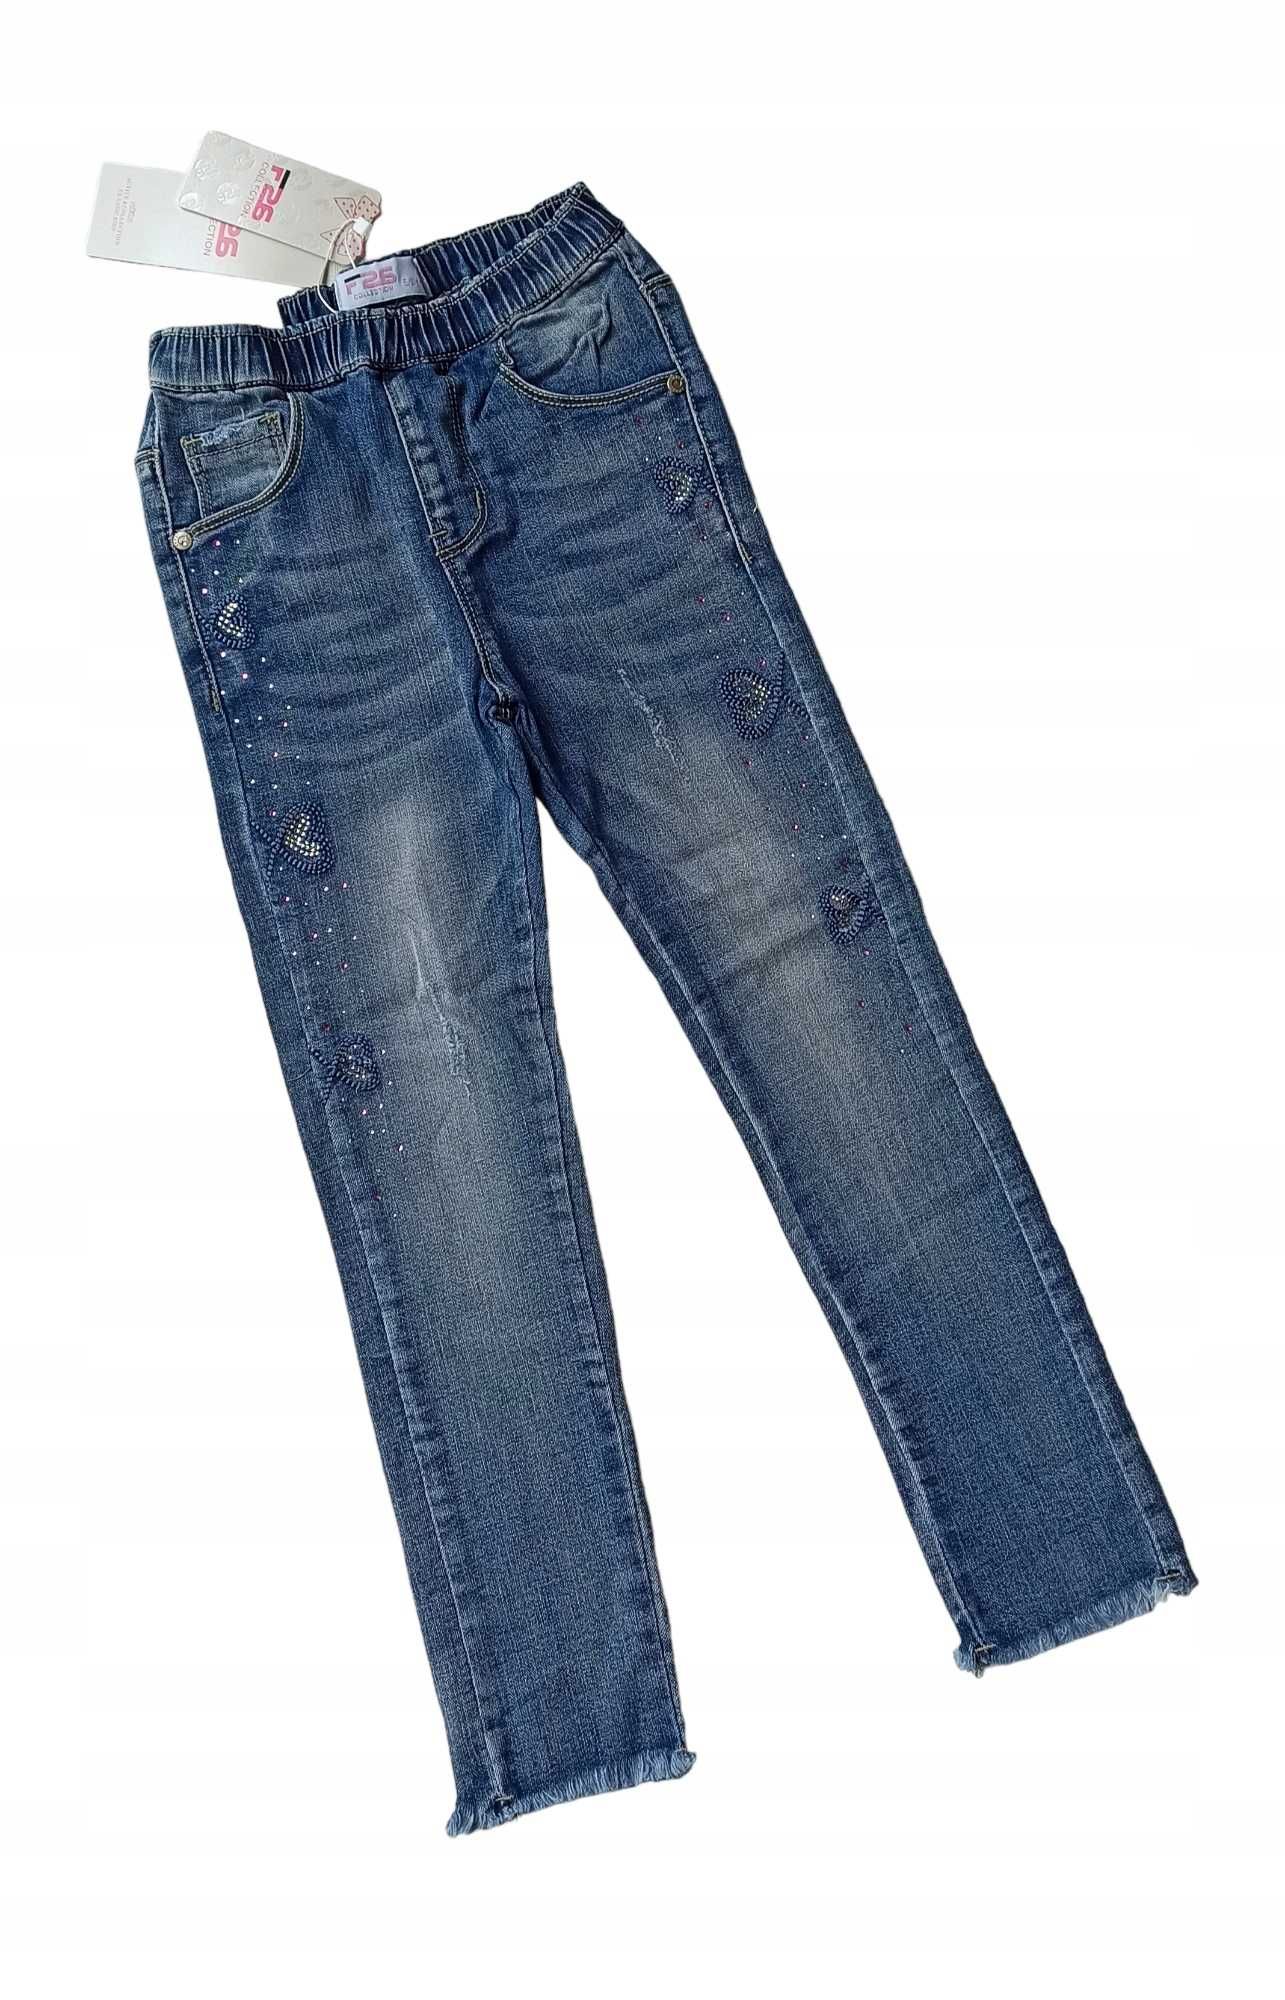 Spodnie jeans dla dziewczynki na gumce nowy 110-116